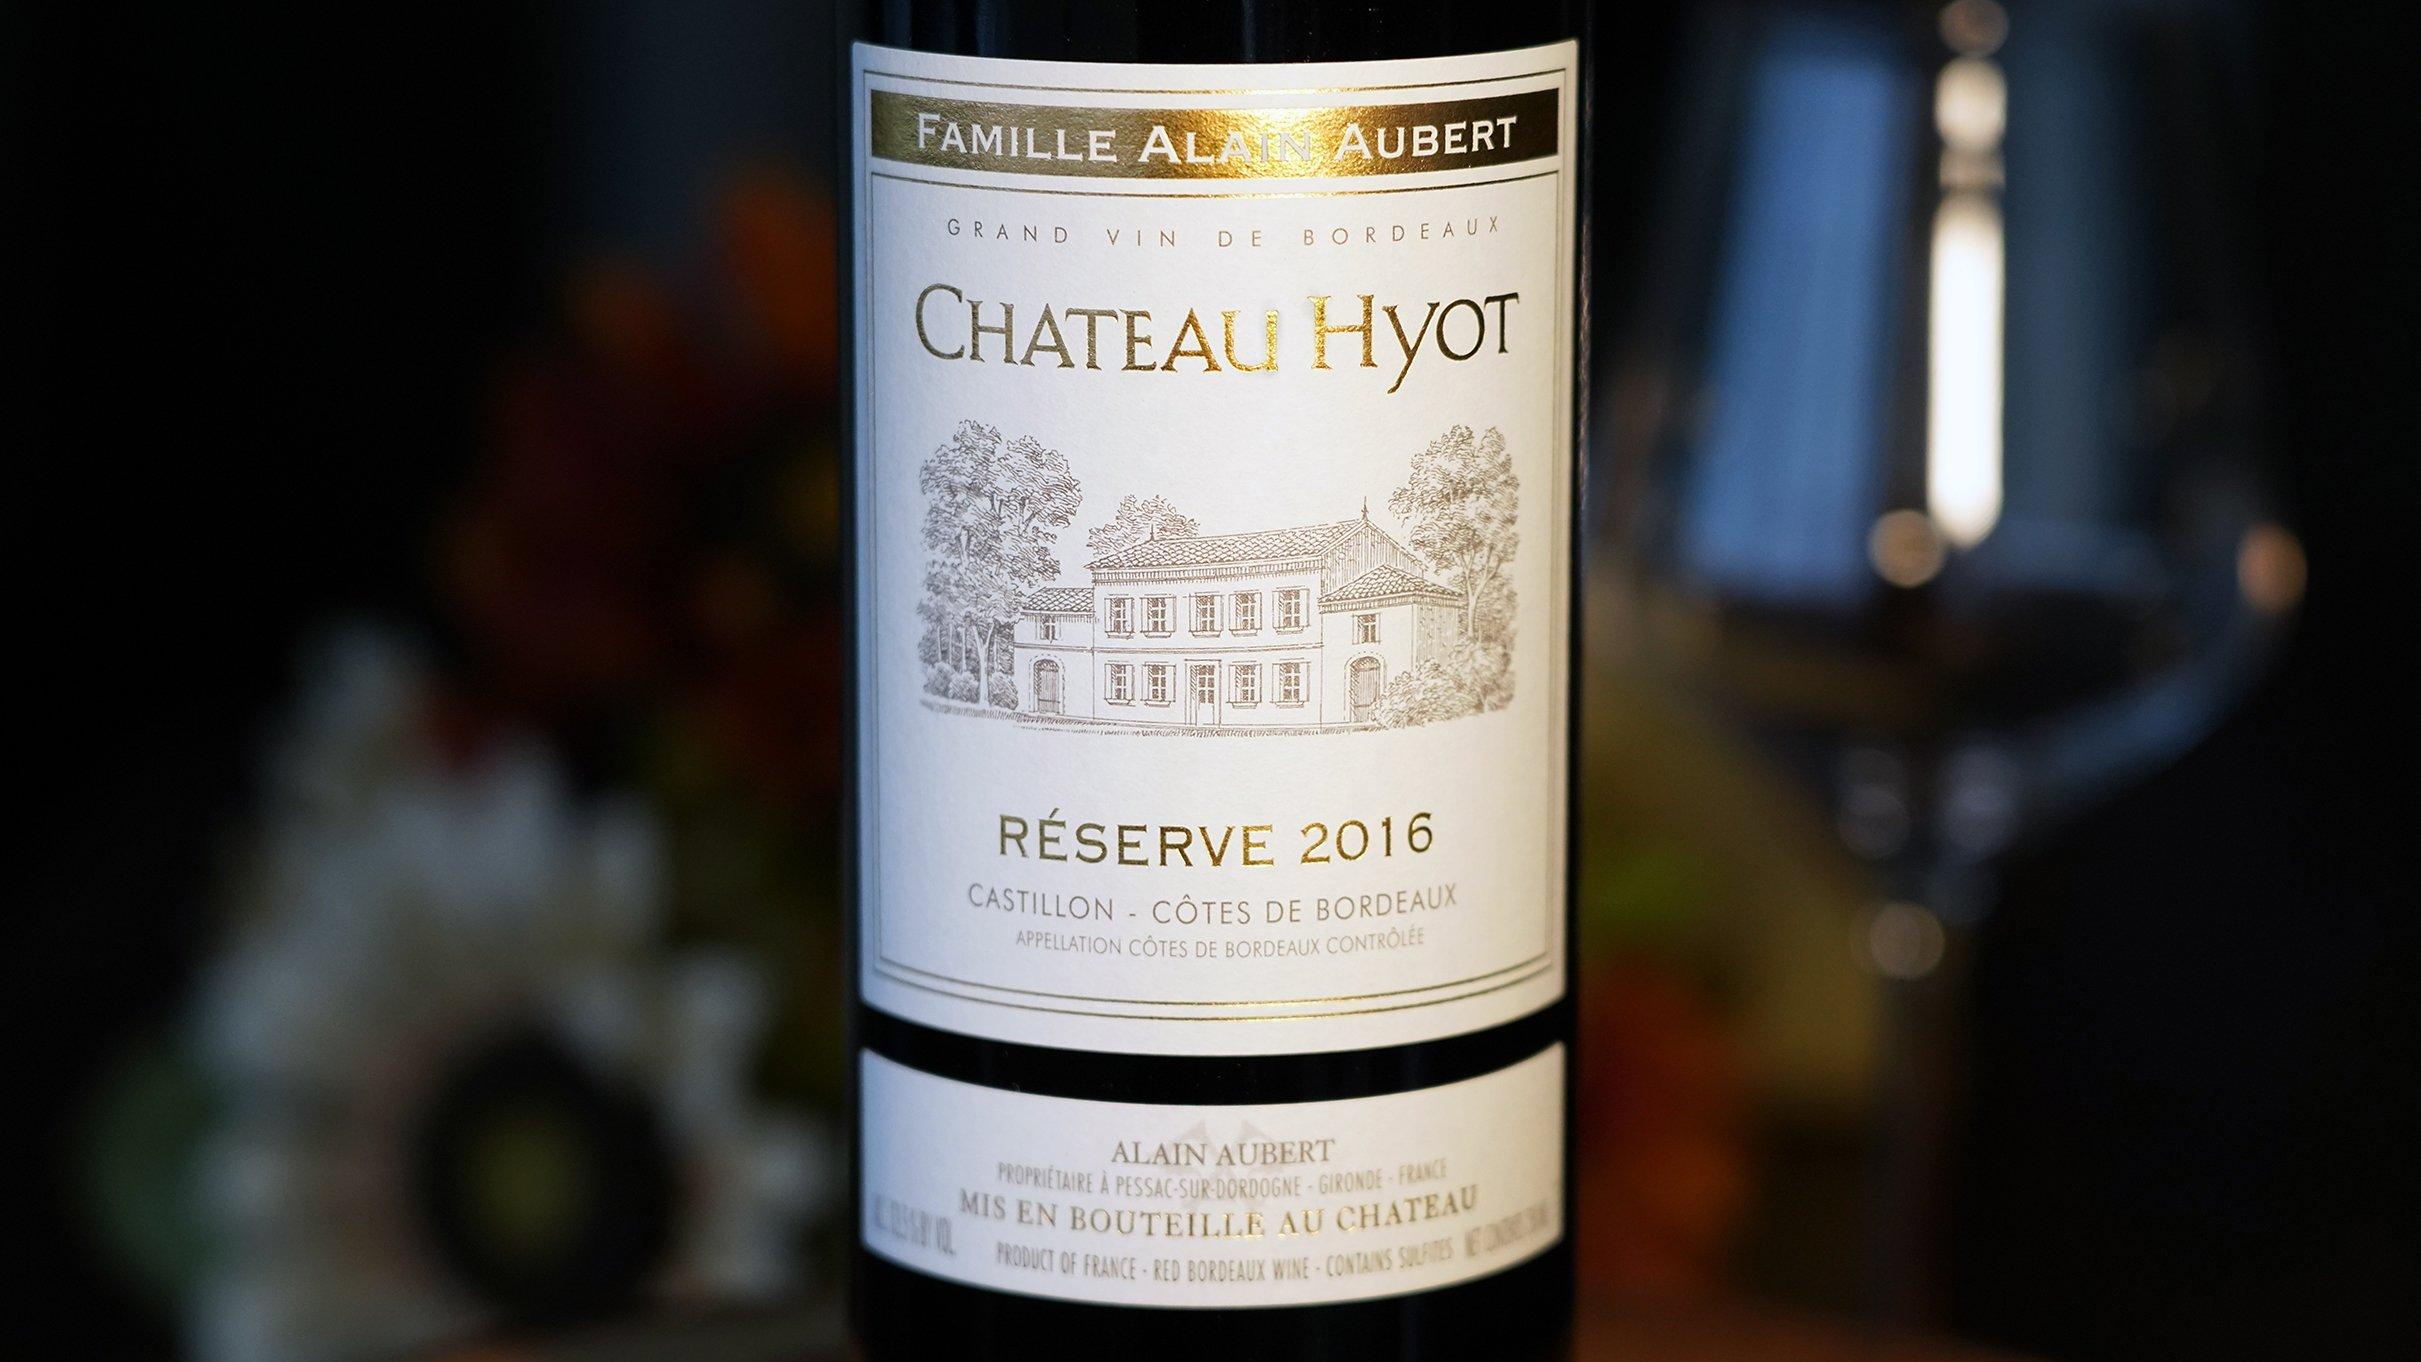 Chateau Hyot 2016 Reserve, Castillon-Cotes de Bordeaux